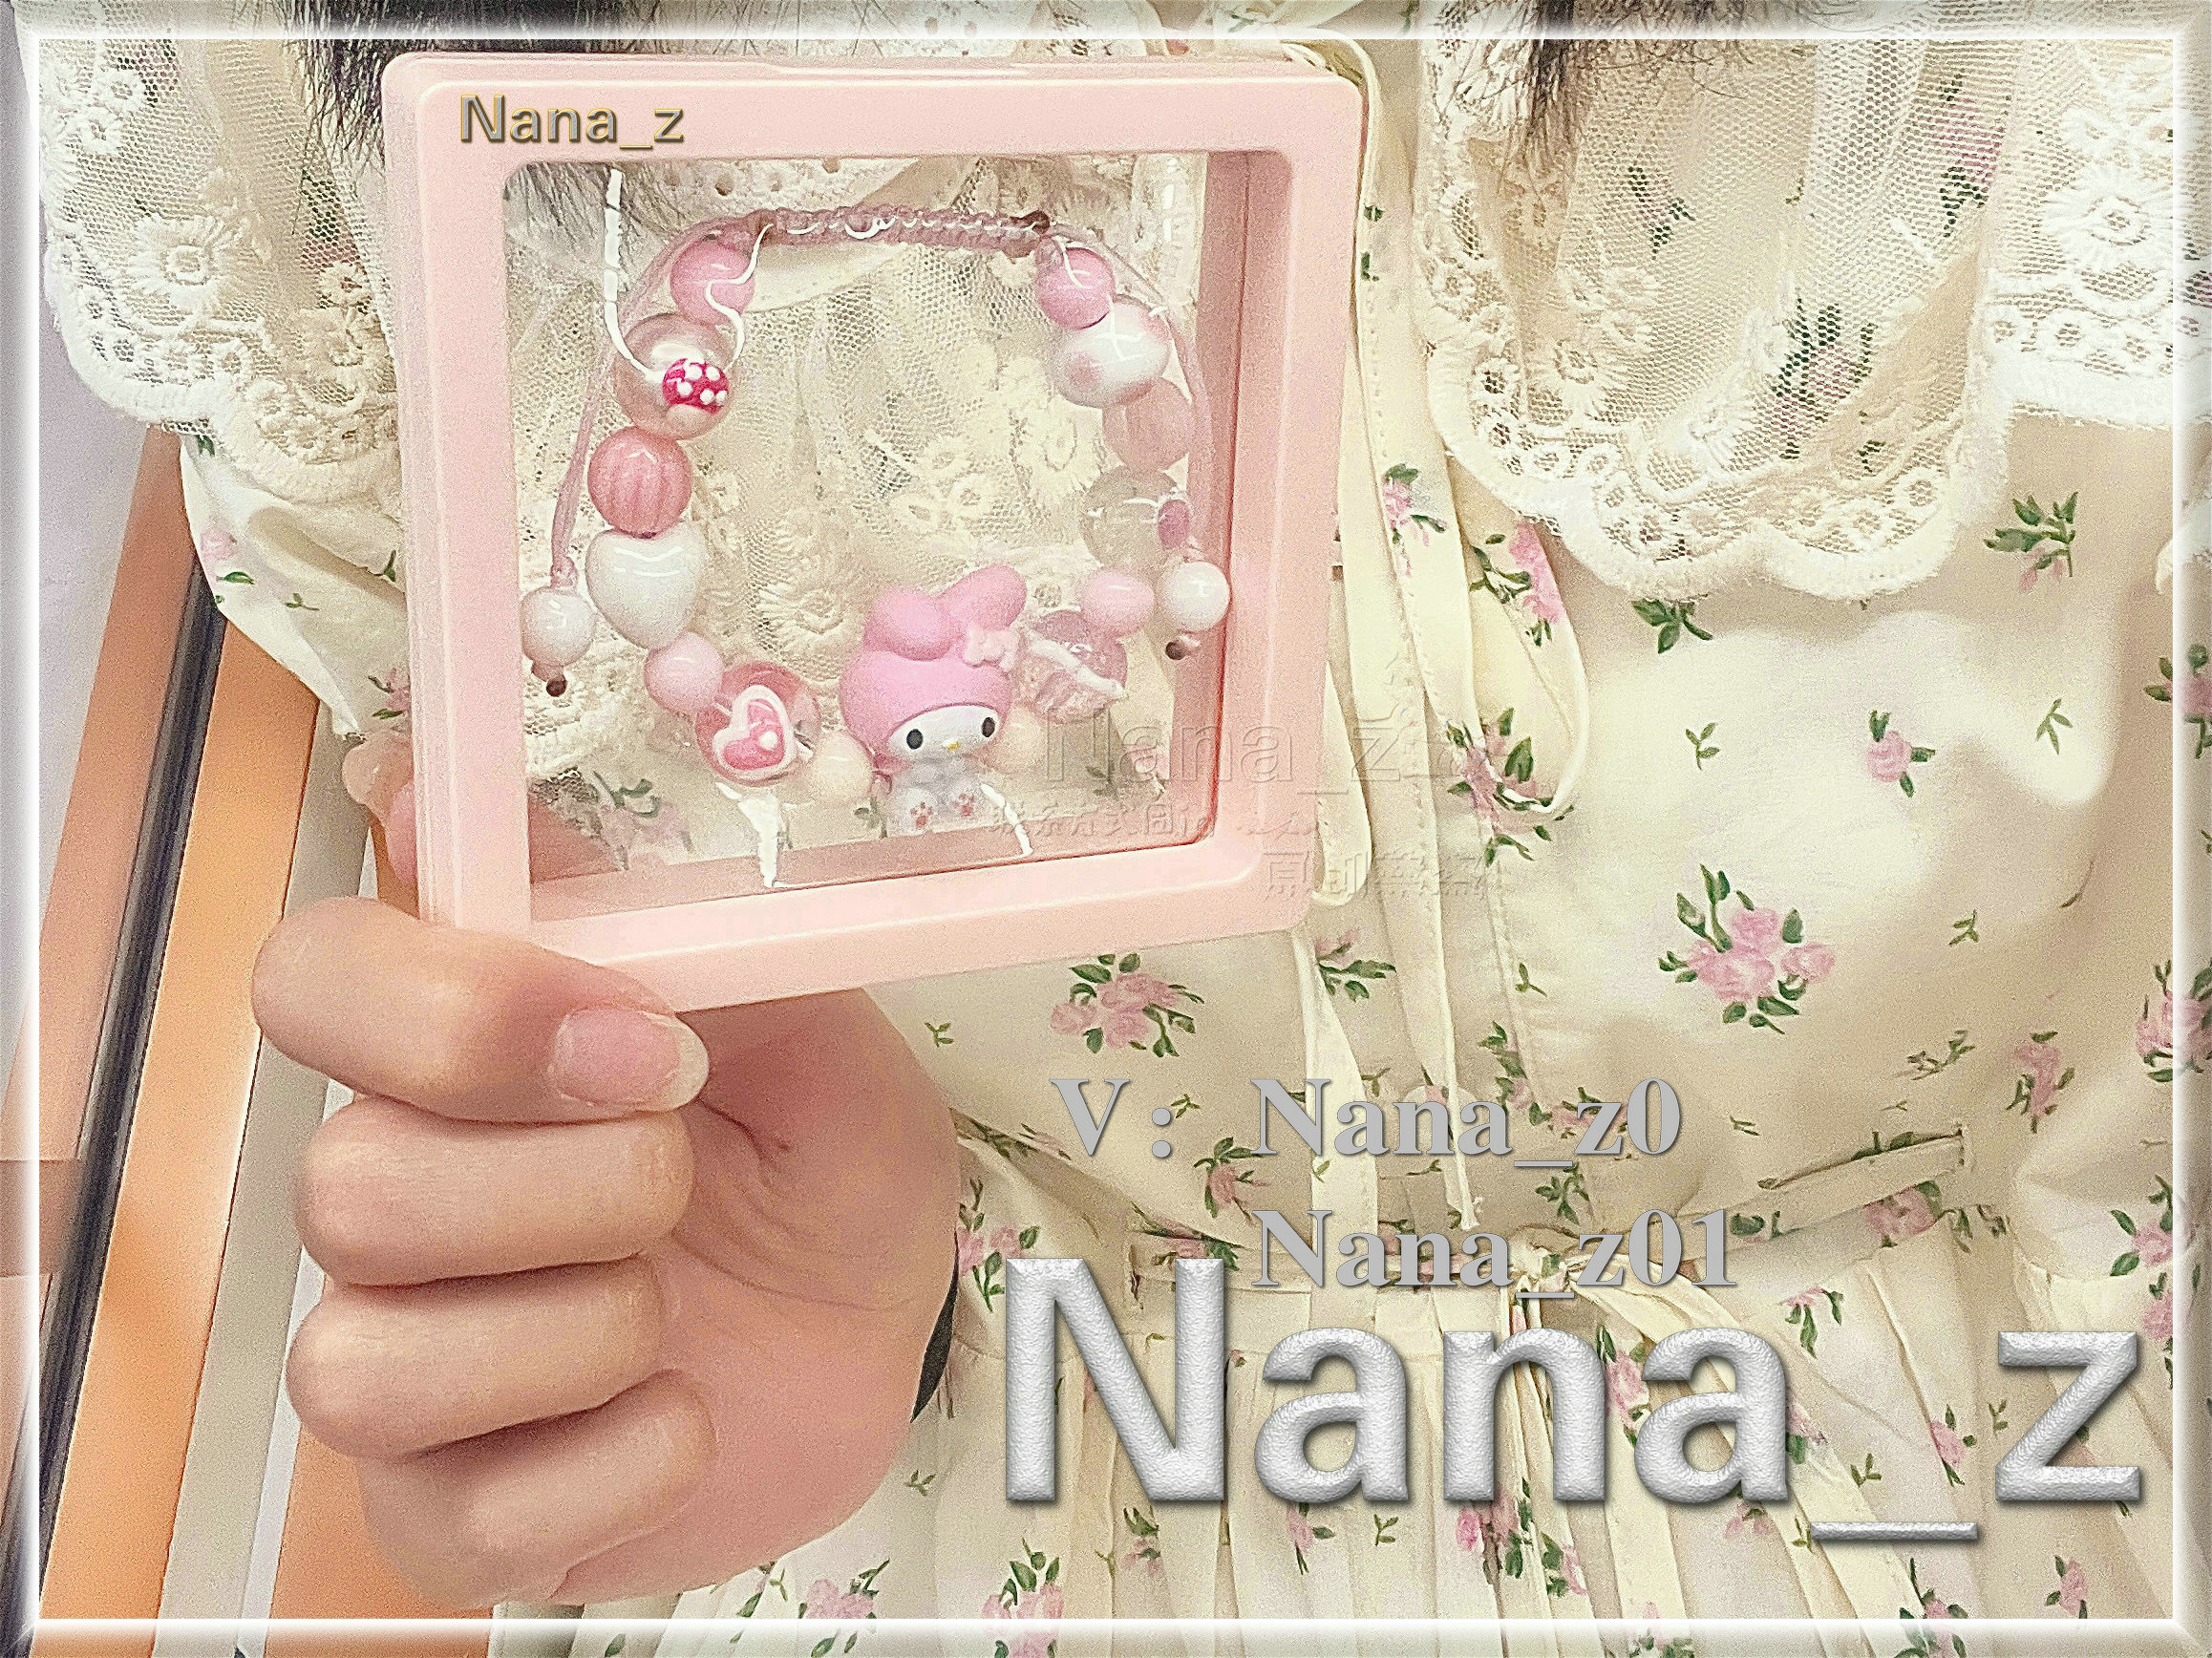 Nana_z娜娜子 (10).jpg